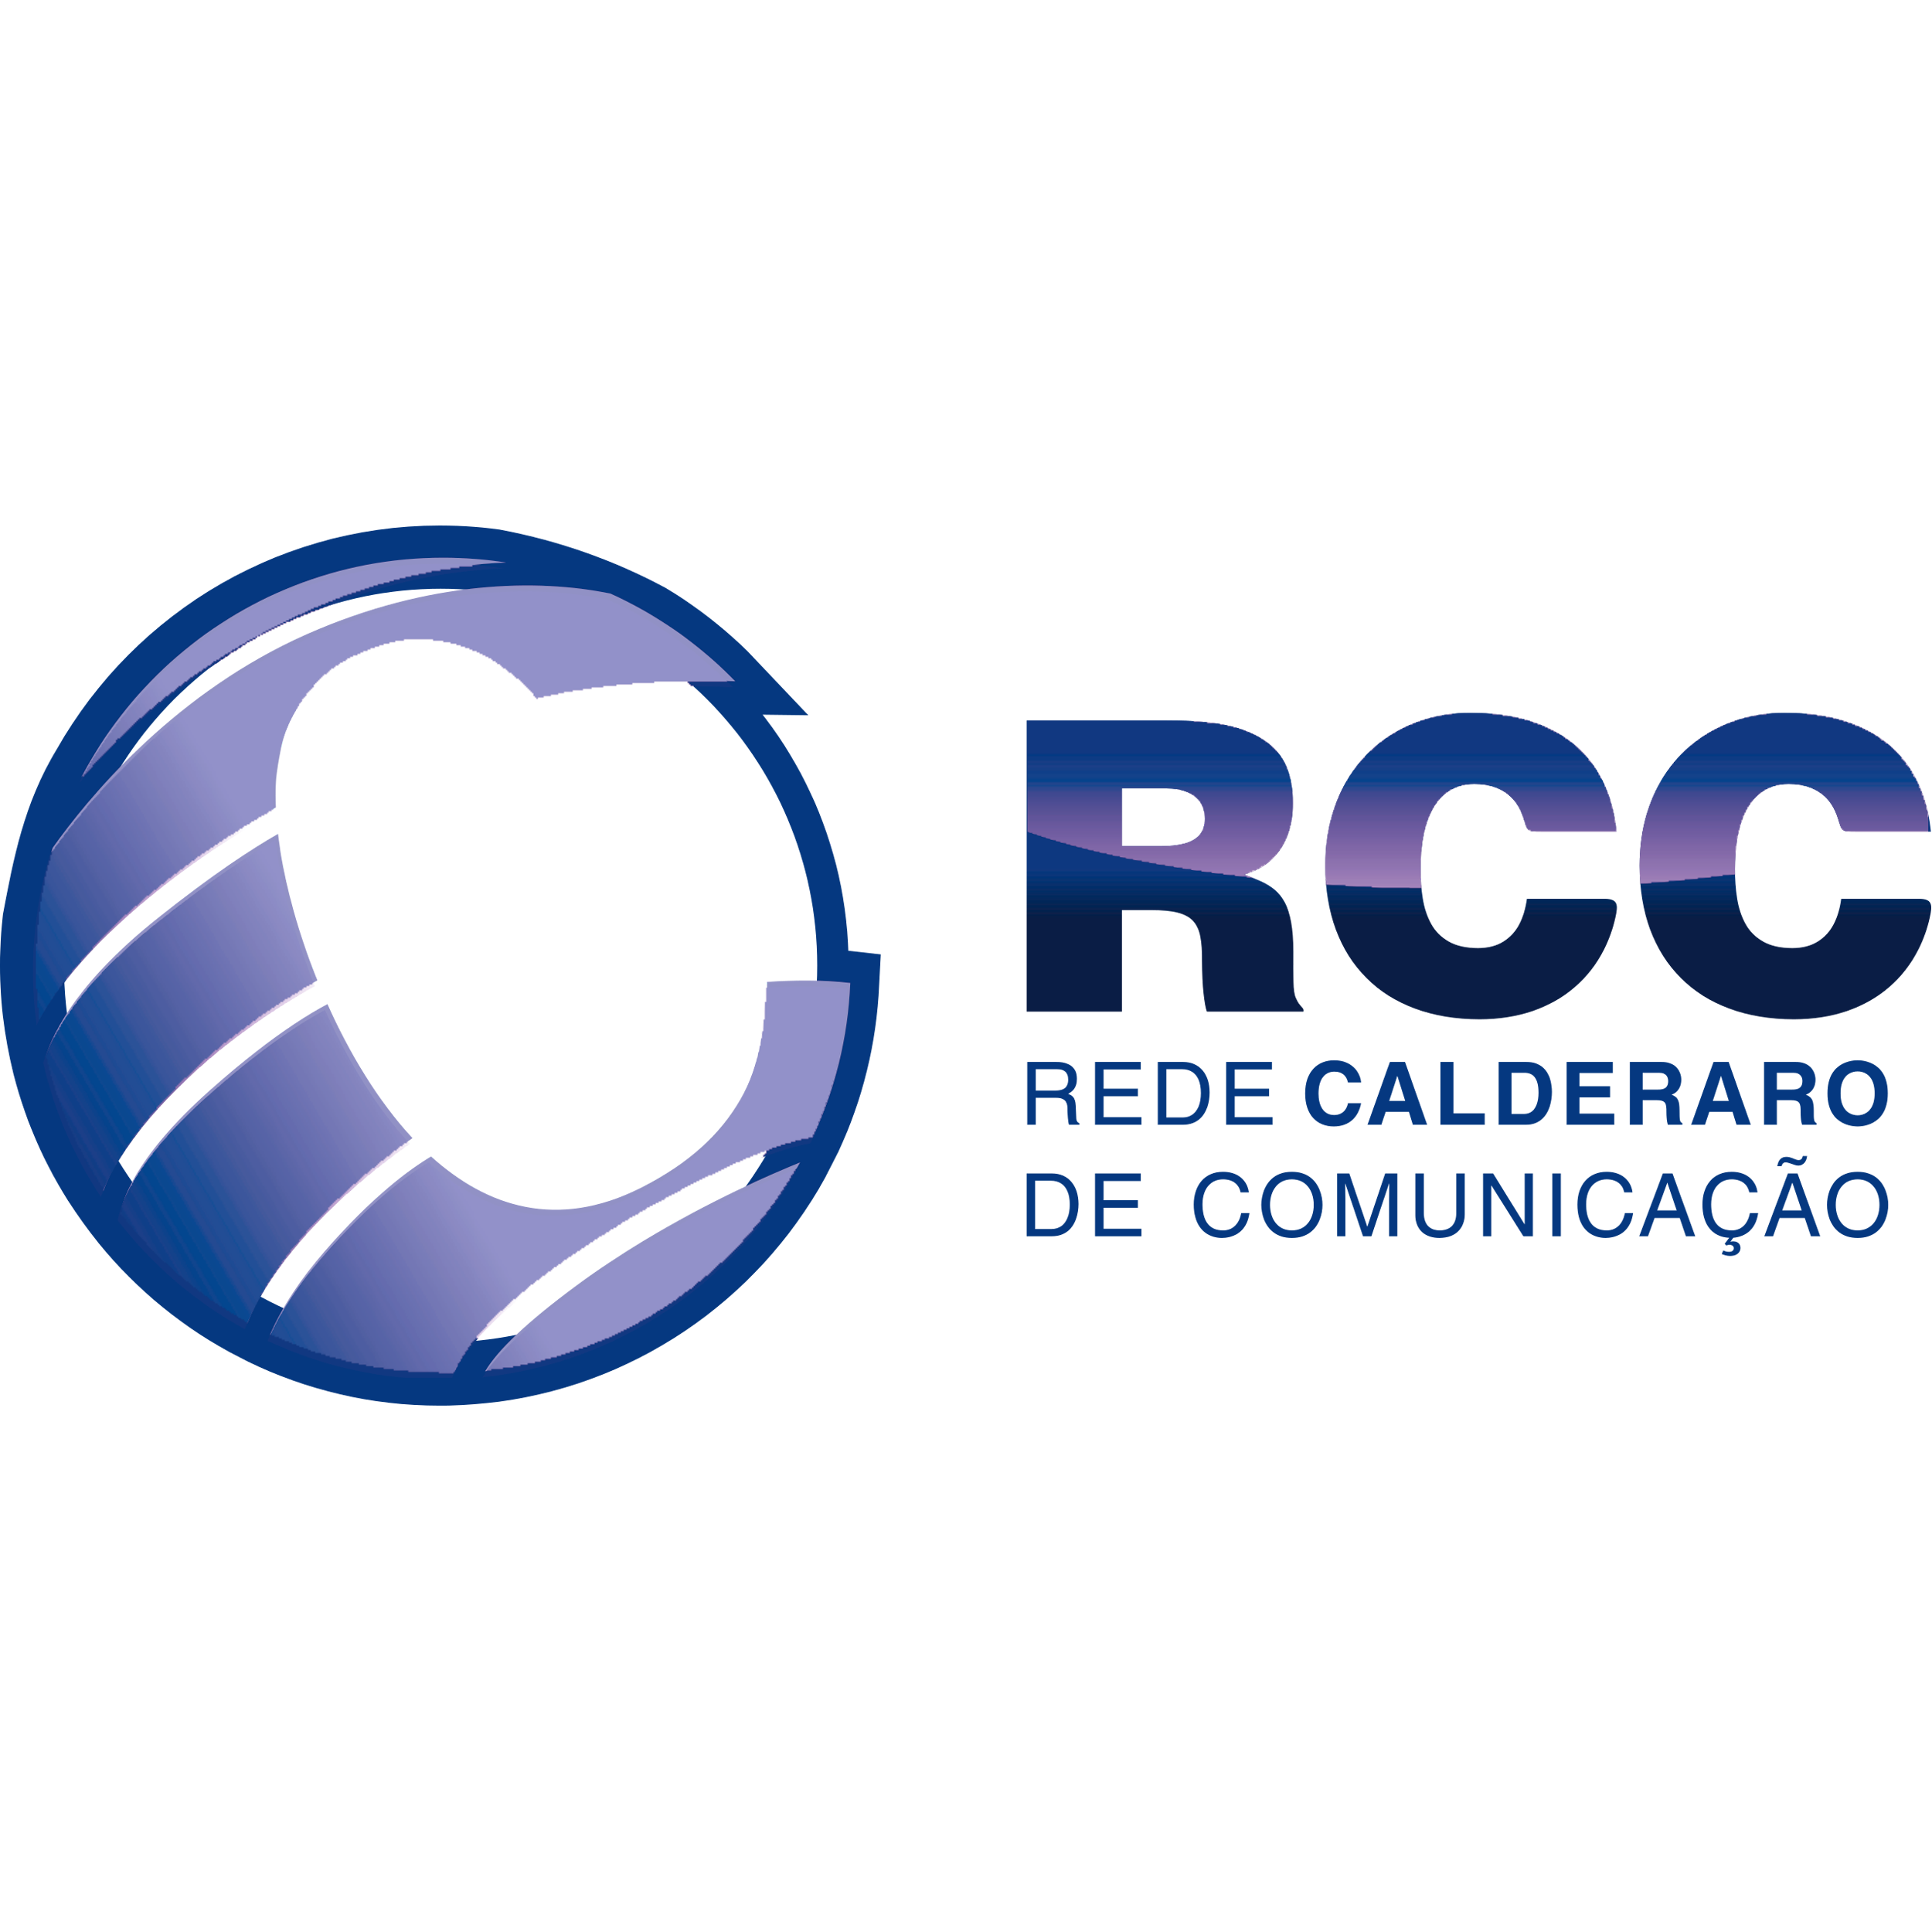 Rede Calderaro De Comunicacao Logo Transparent Photo